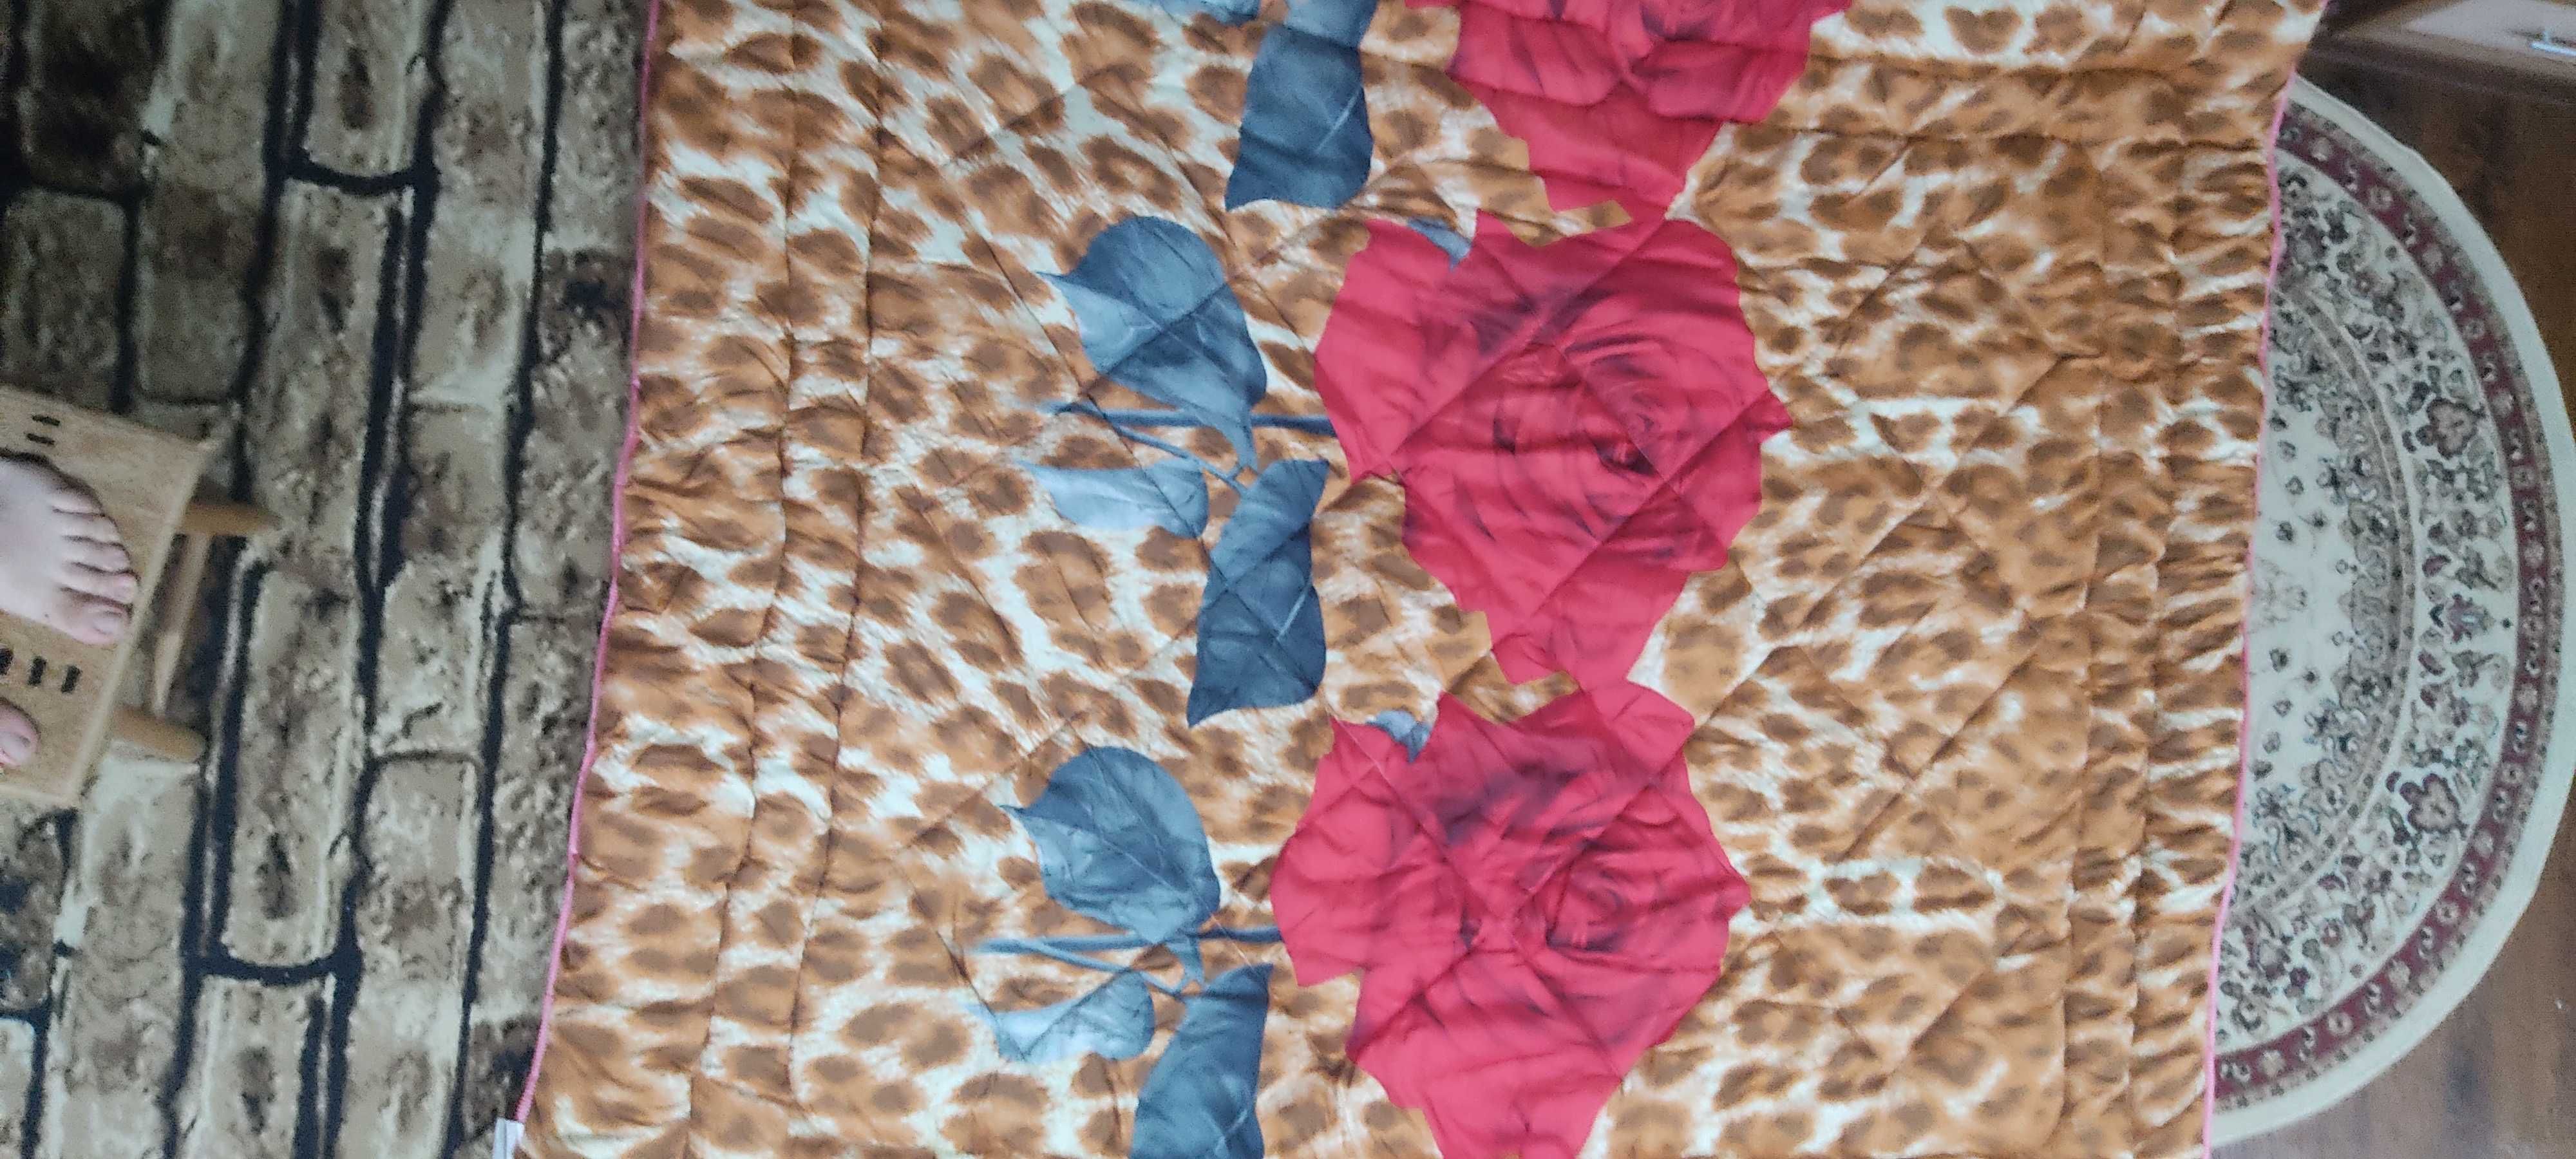 2-х спальное одеяло из Южной Кореи (made in Turkey)по оптовой цене